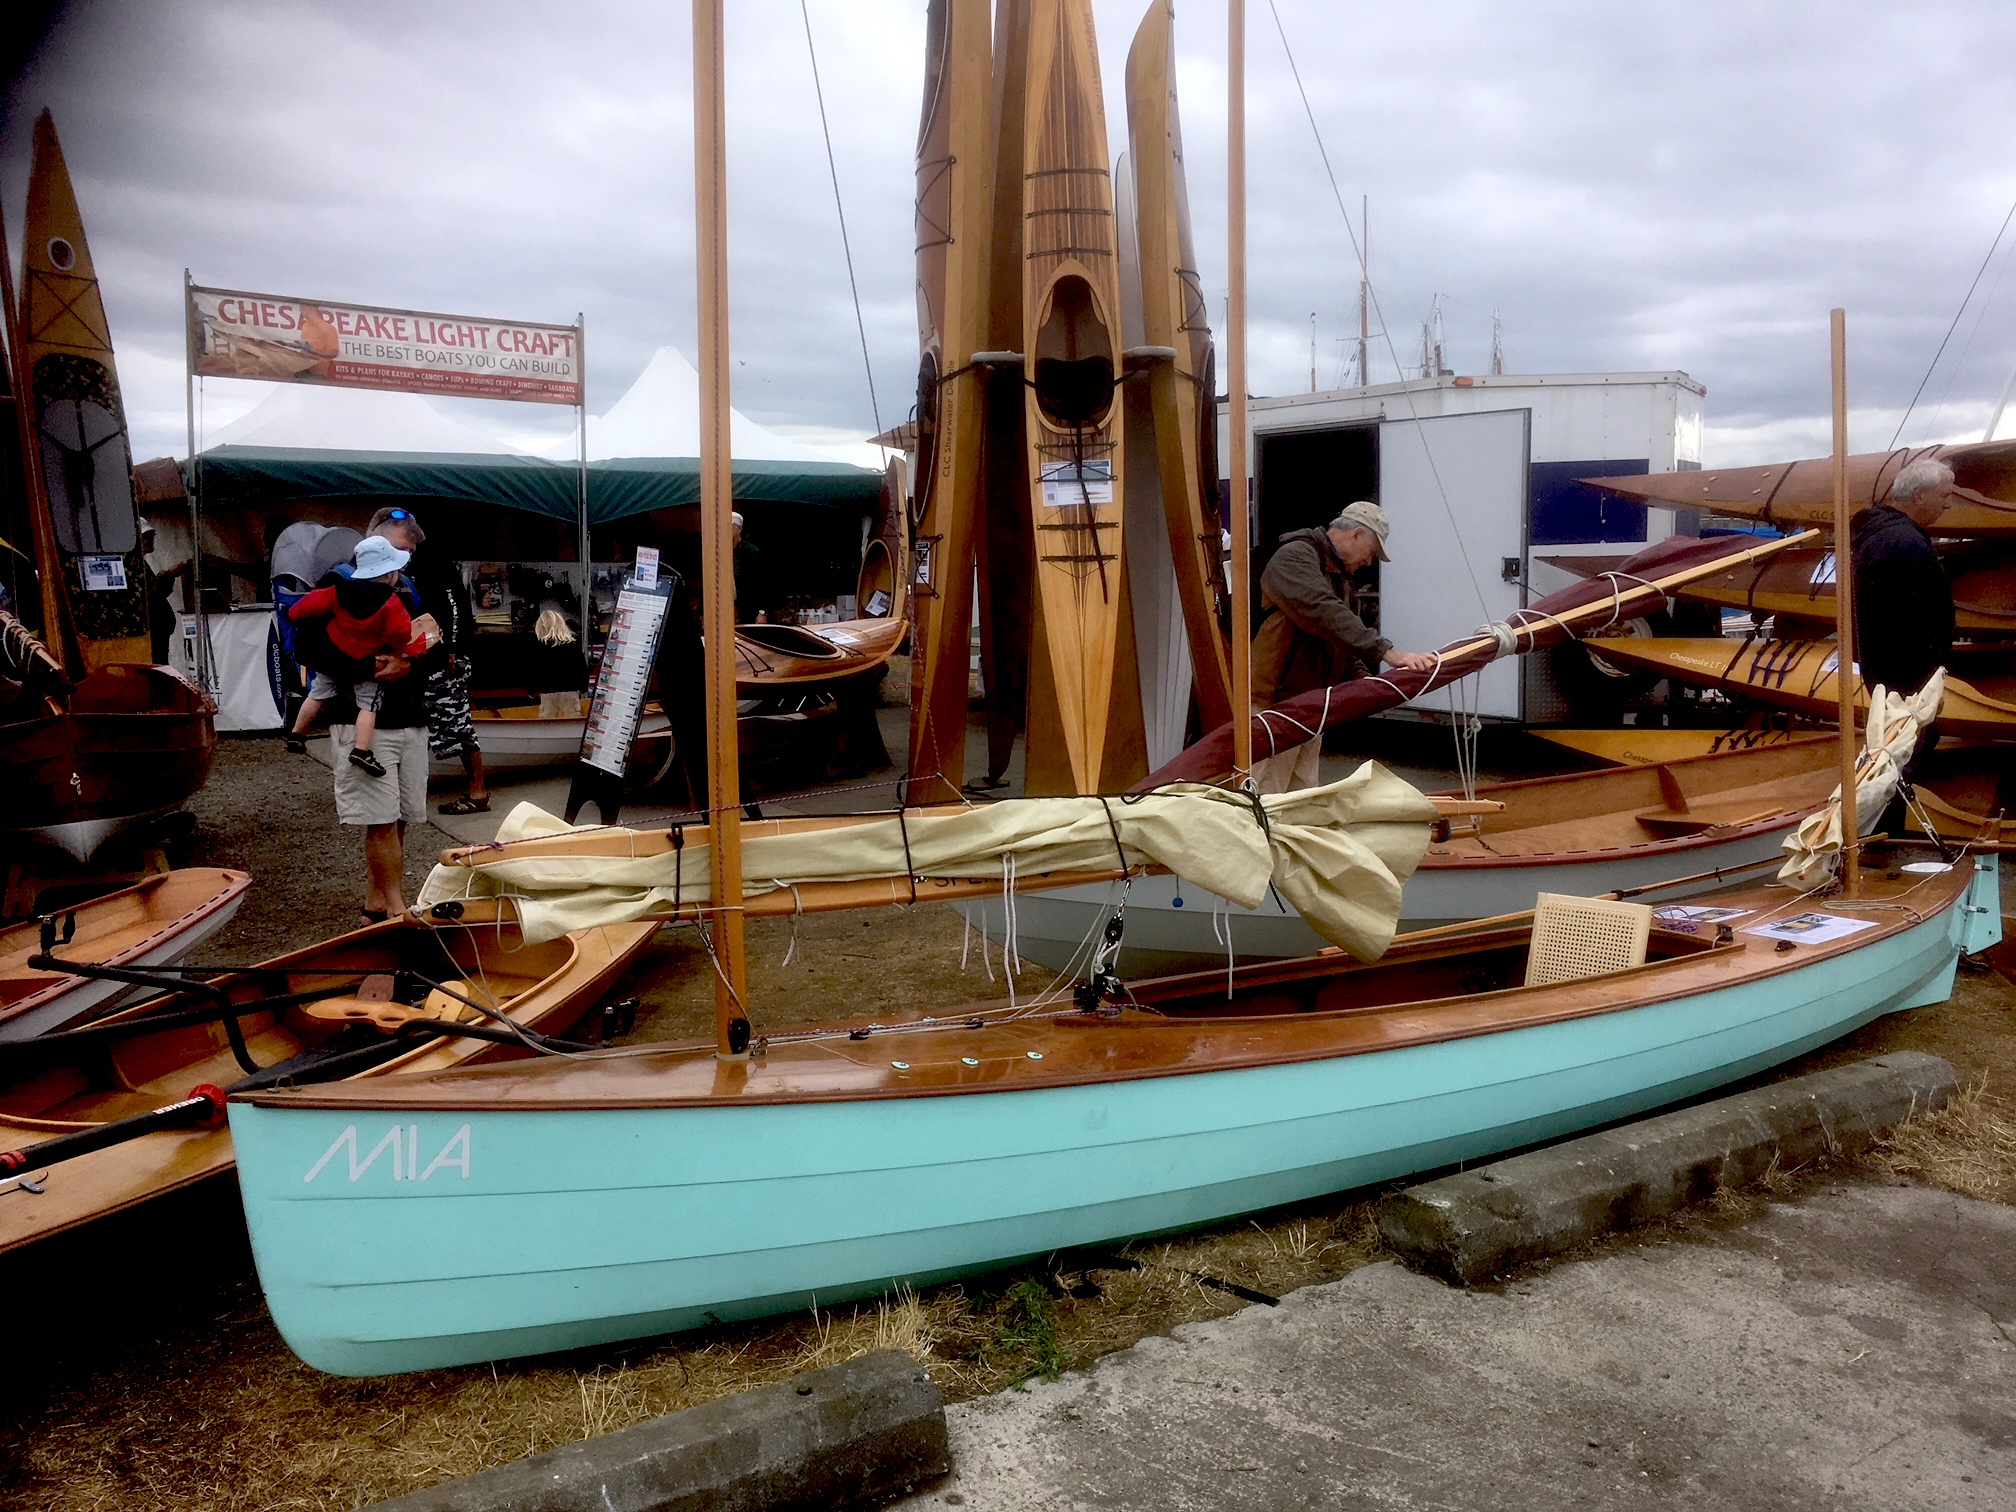 Port Townsend Wooden Boat Festival Australian Wooden Boat Festival